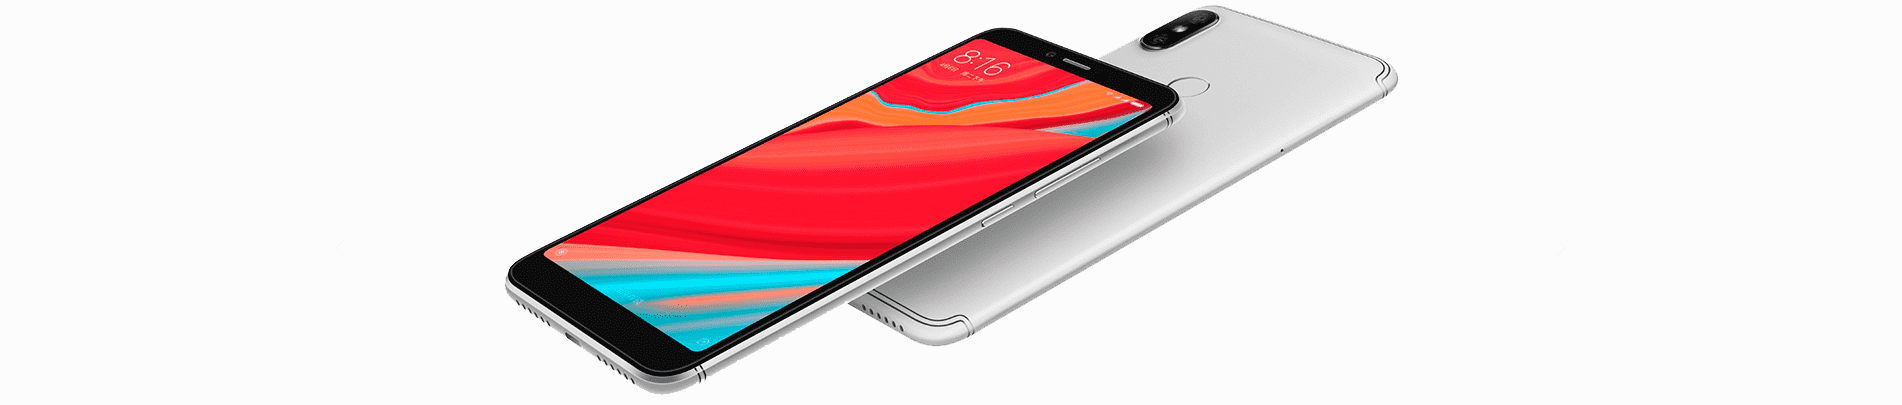 Внешний вид смартфона Xiaomi Redmi S2